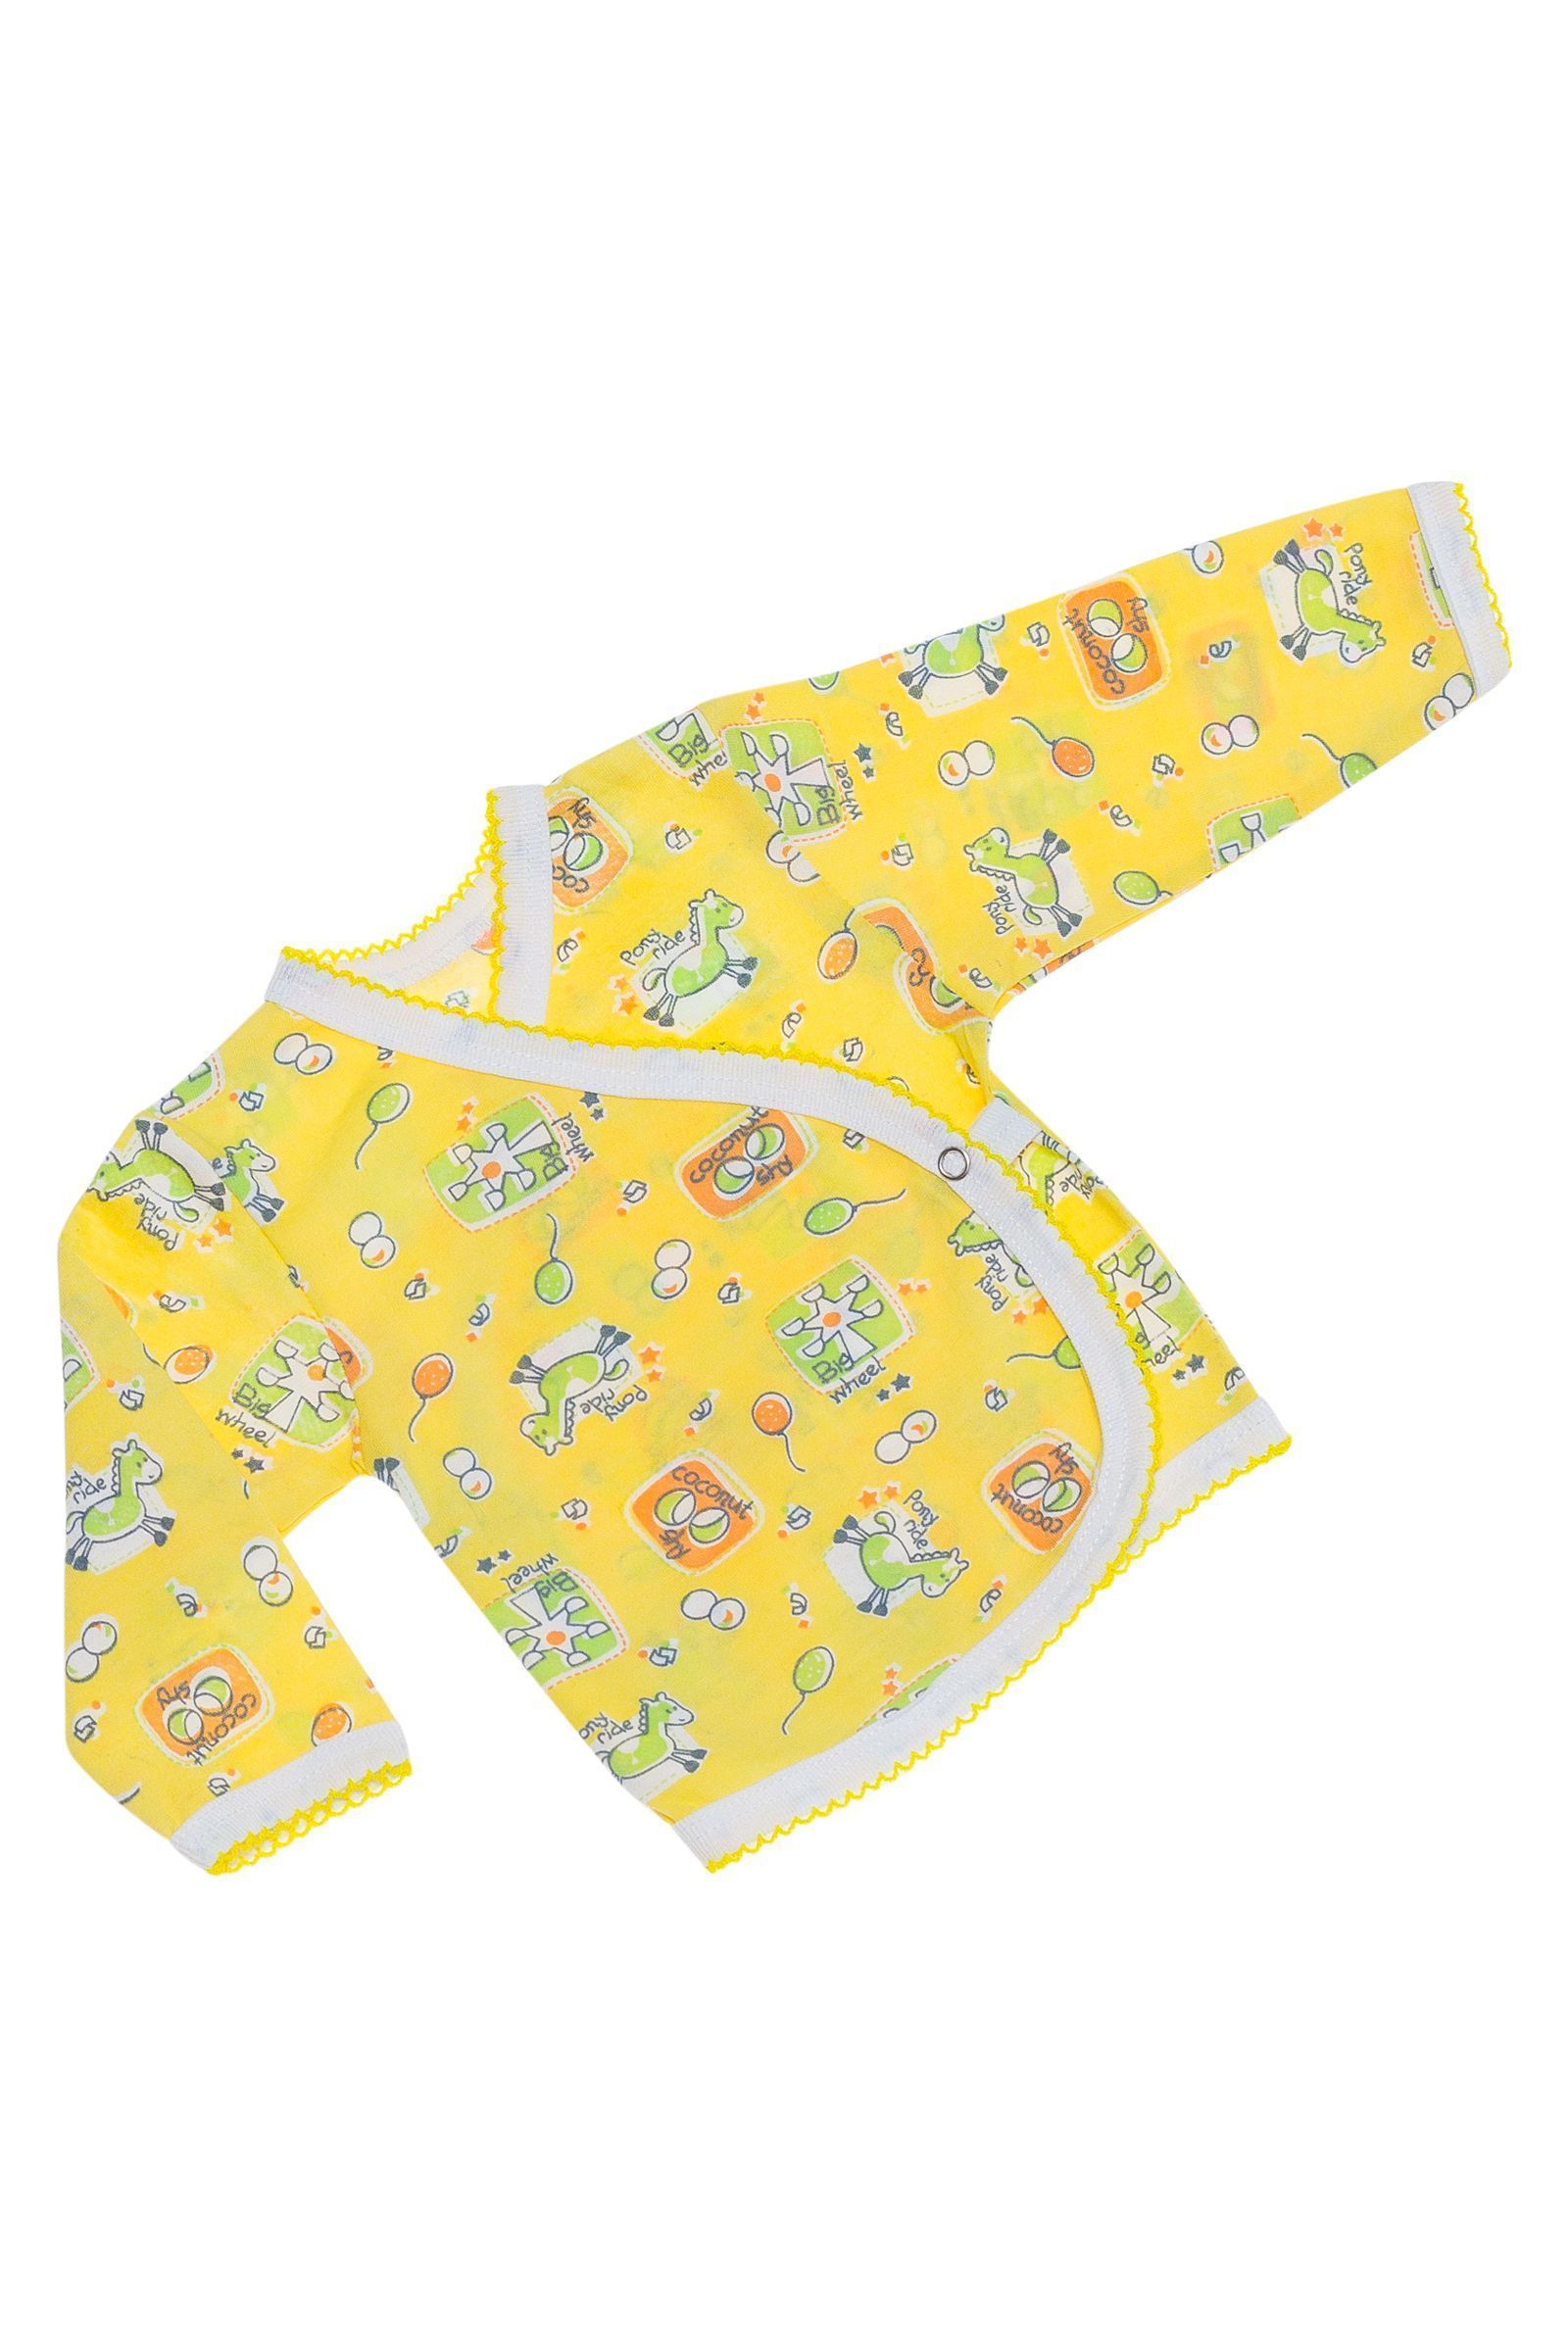 Распашонка-РП02-826 оптом от производителя детской одежды 'Алёна'